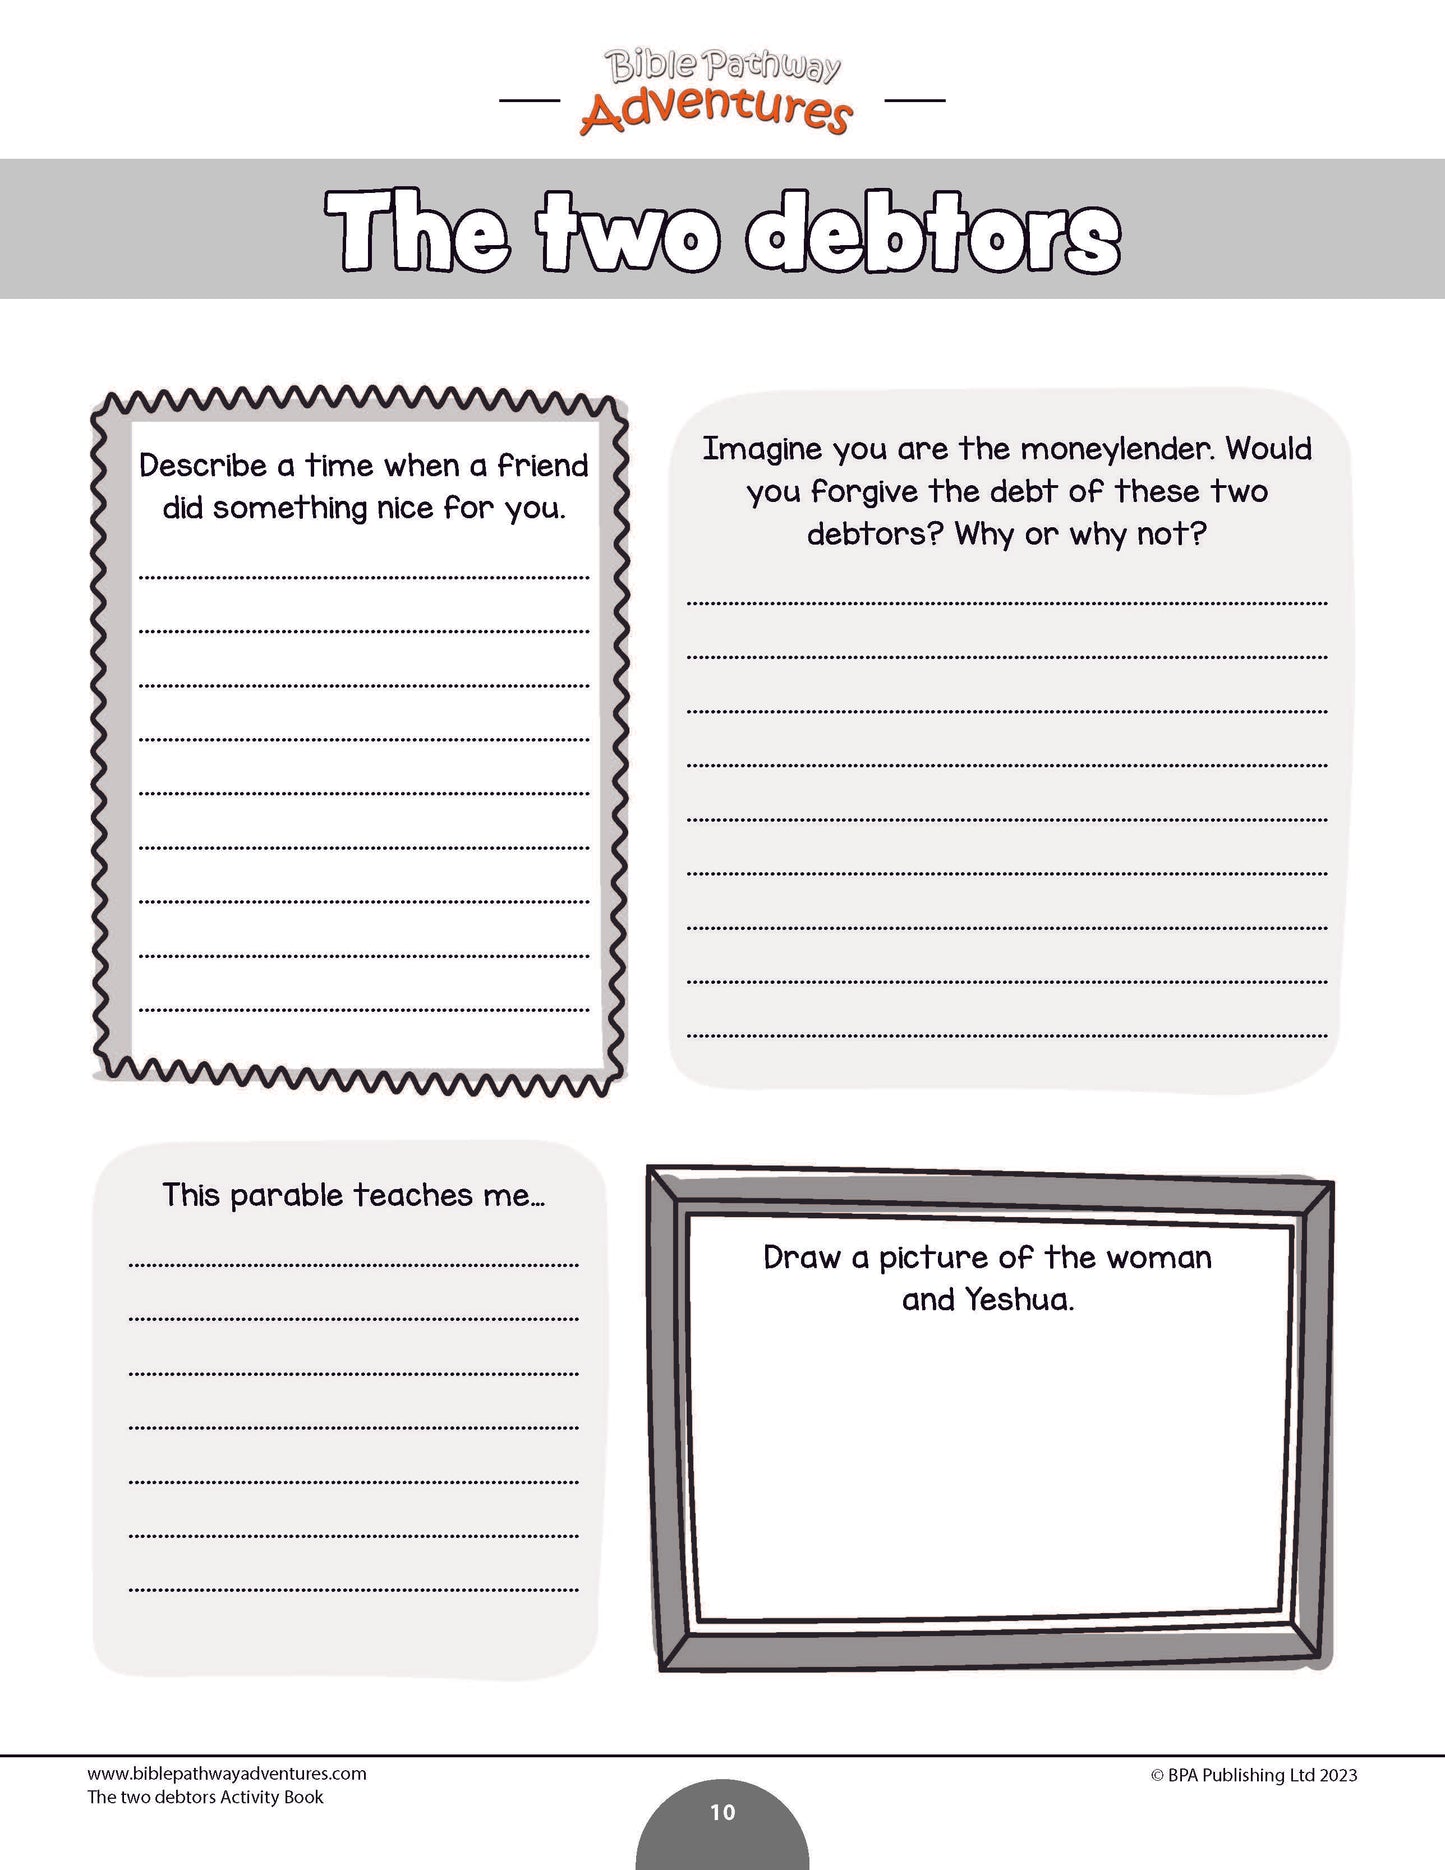 Libro de actividades de la parábola de los dos deudores